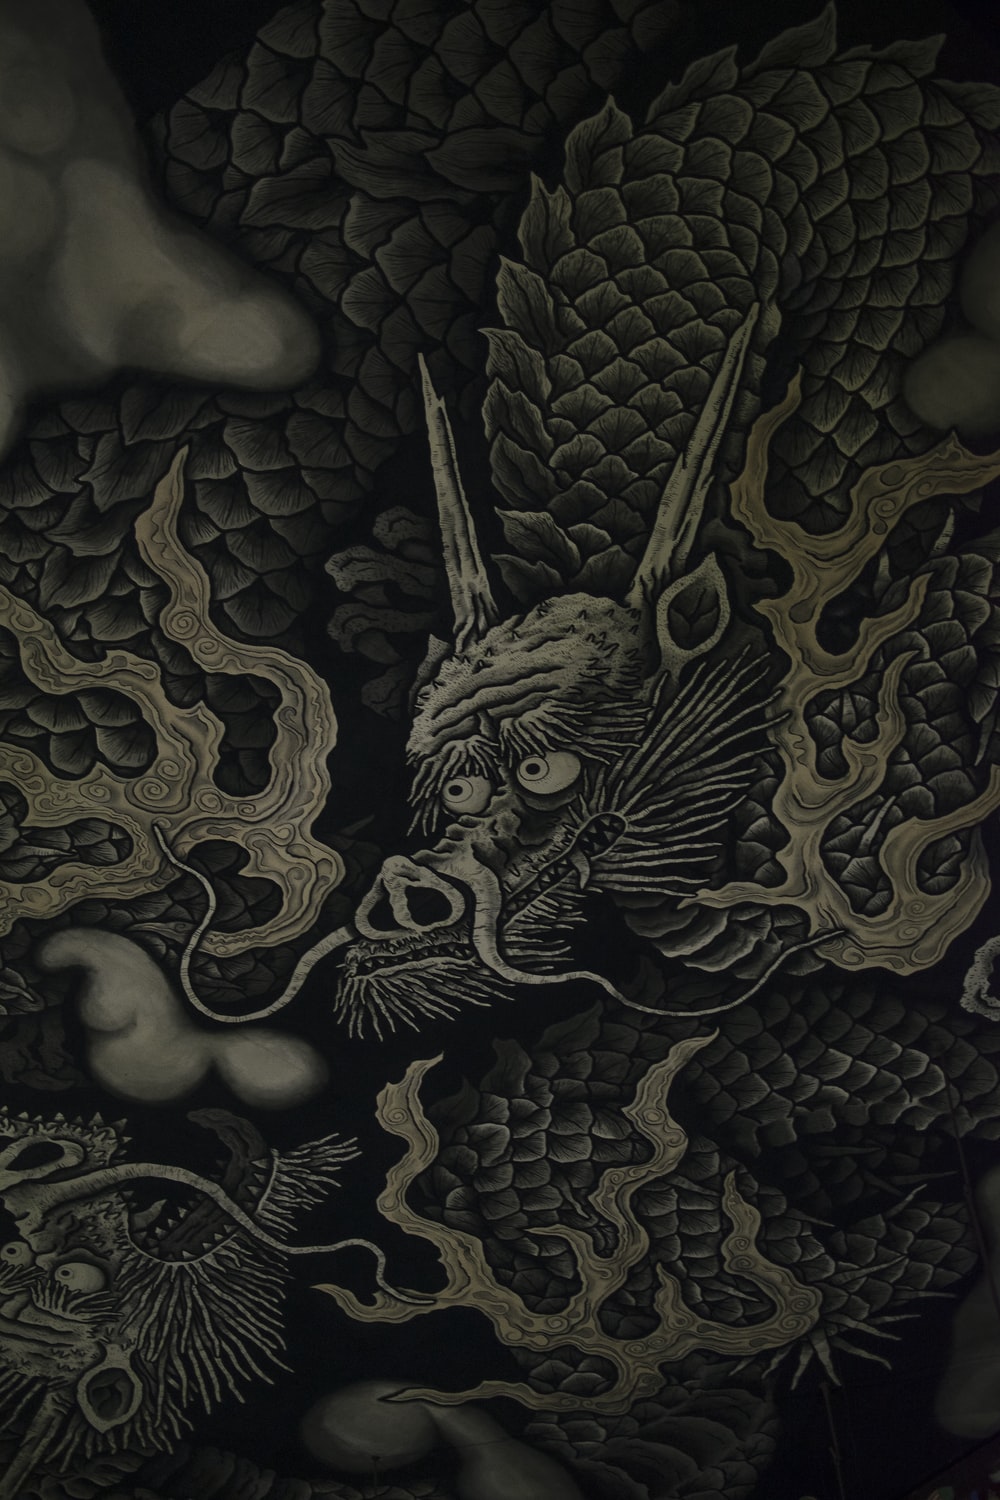 Dragon Artwork Wallpapers